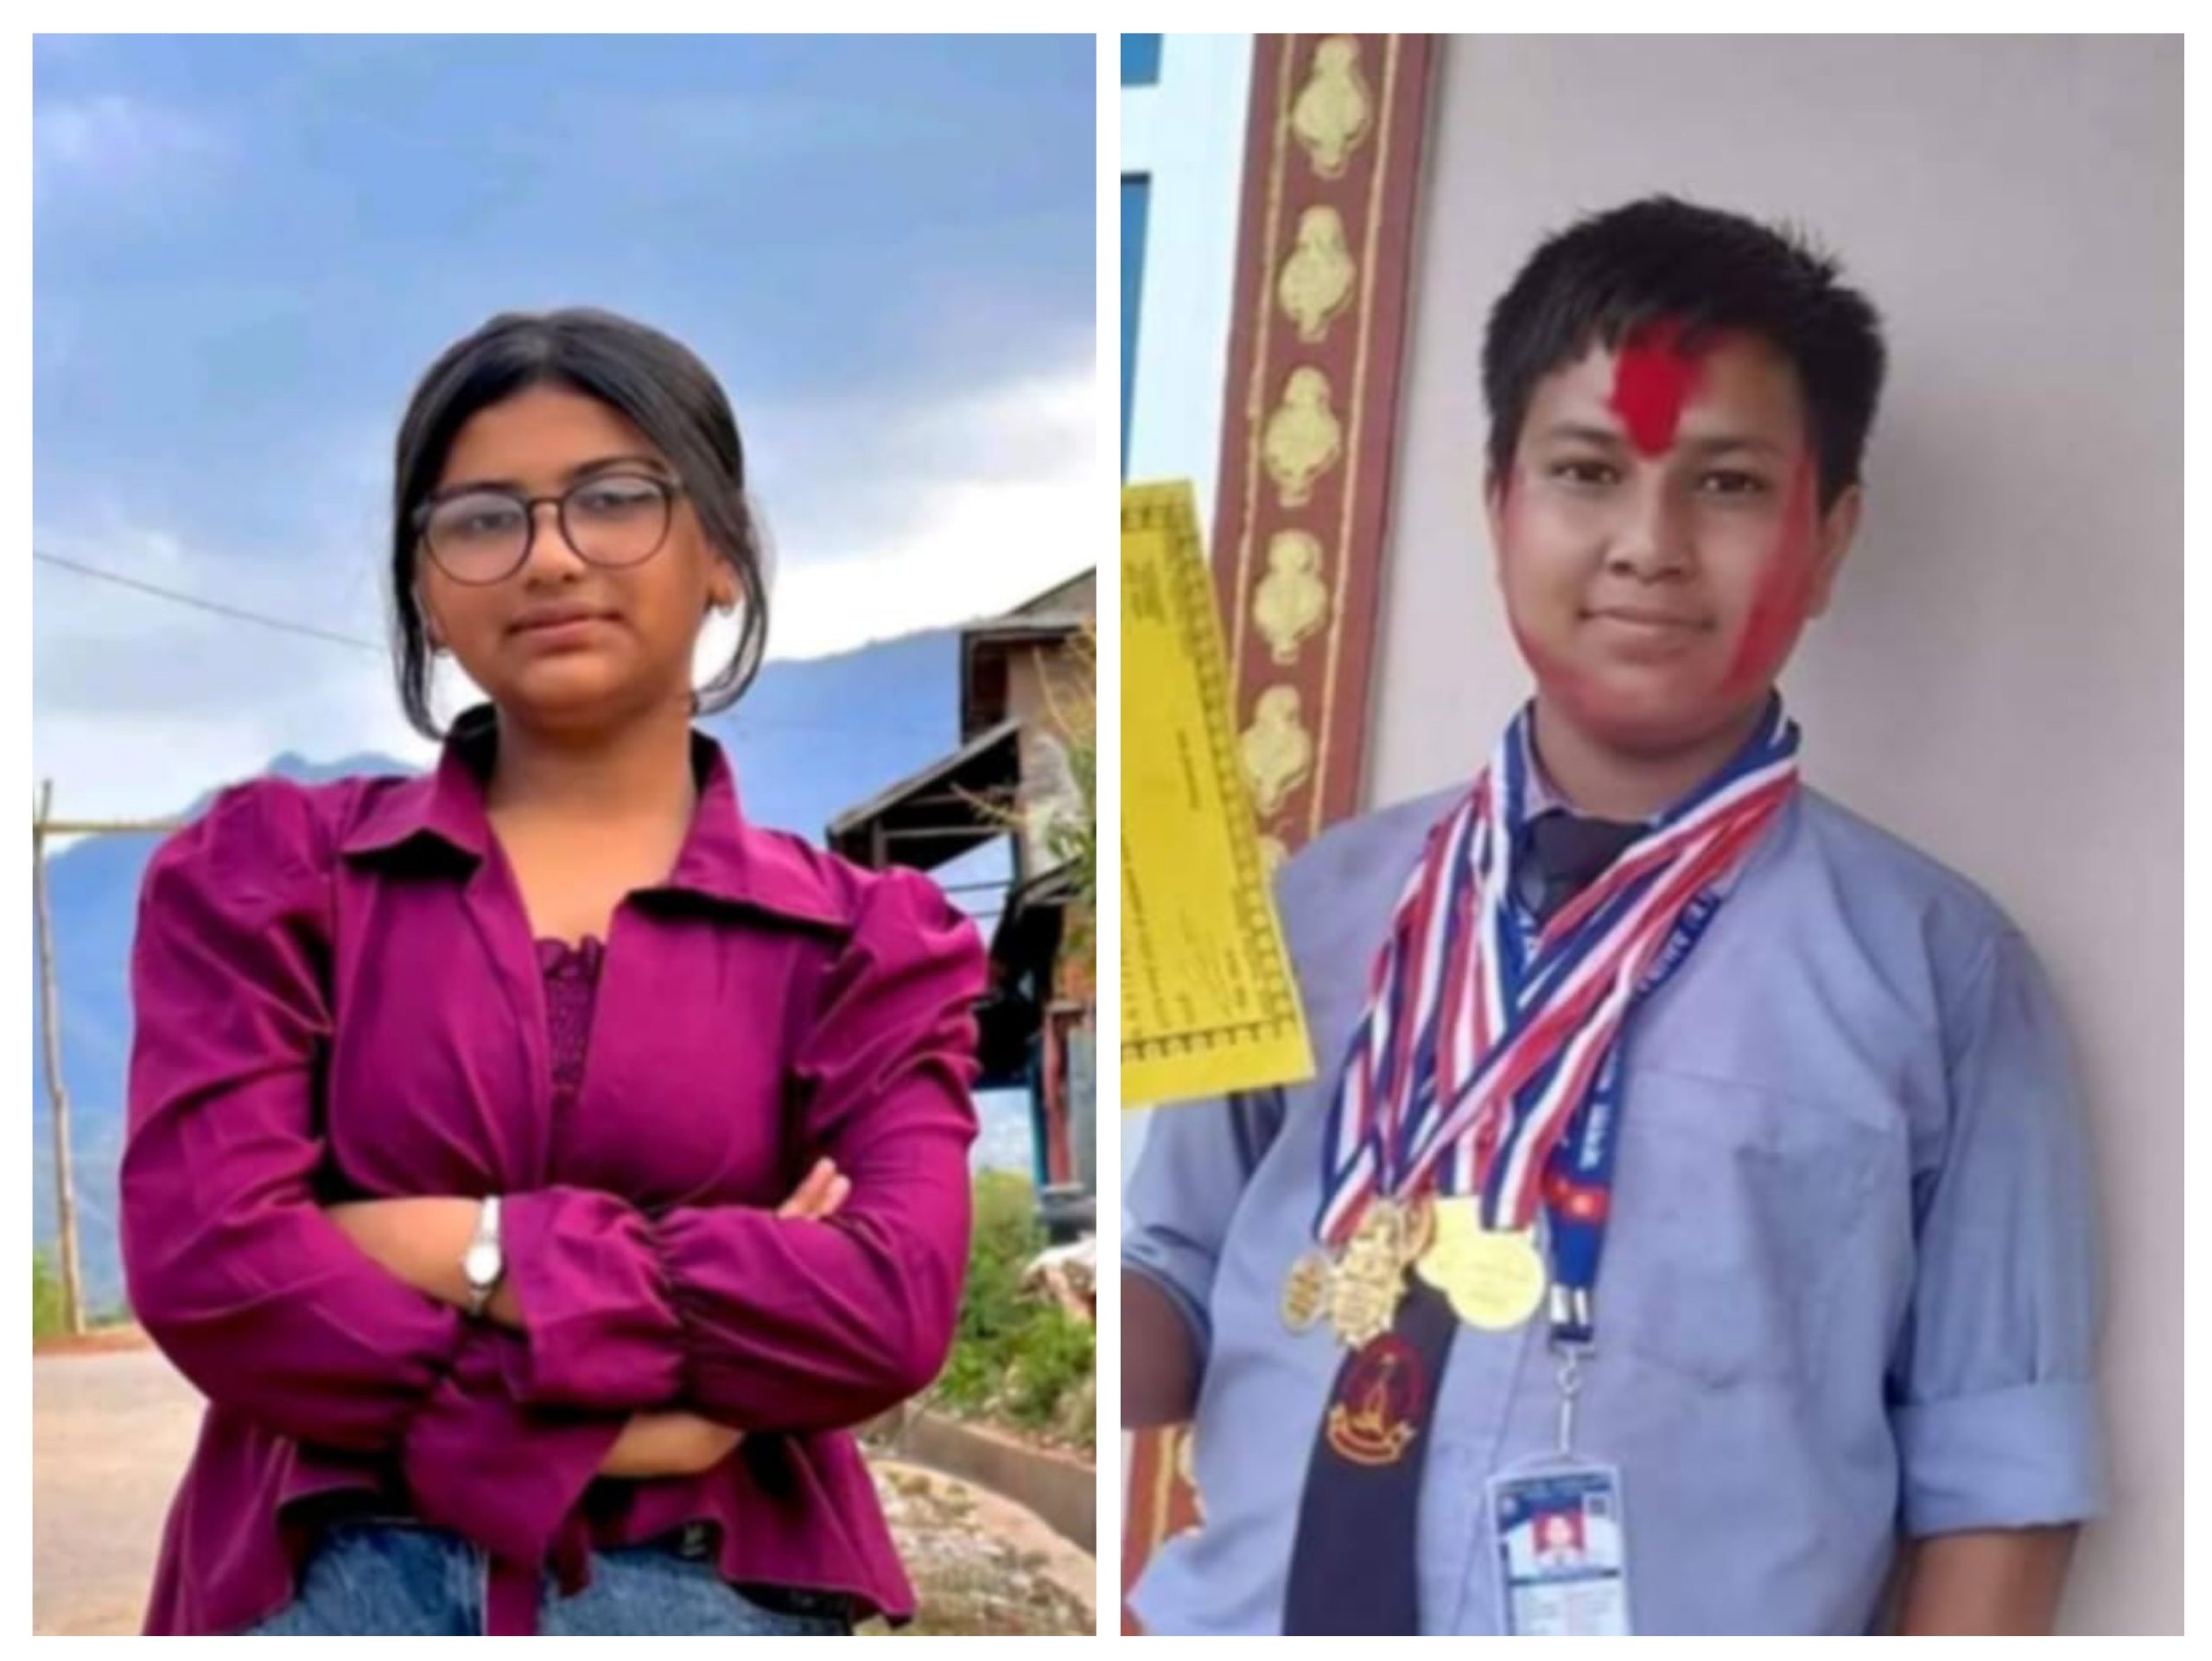 जनता मावि तानसेन  एवं  दरैठाटी मावि रामपुरबाट एसइइमा सहभागी विद्यार्थीकाे  चार जिपिए